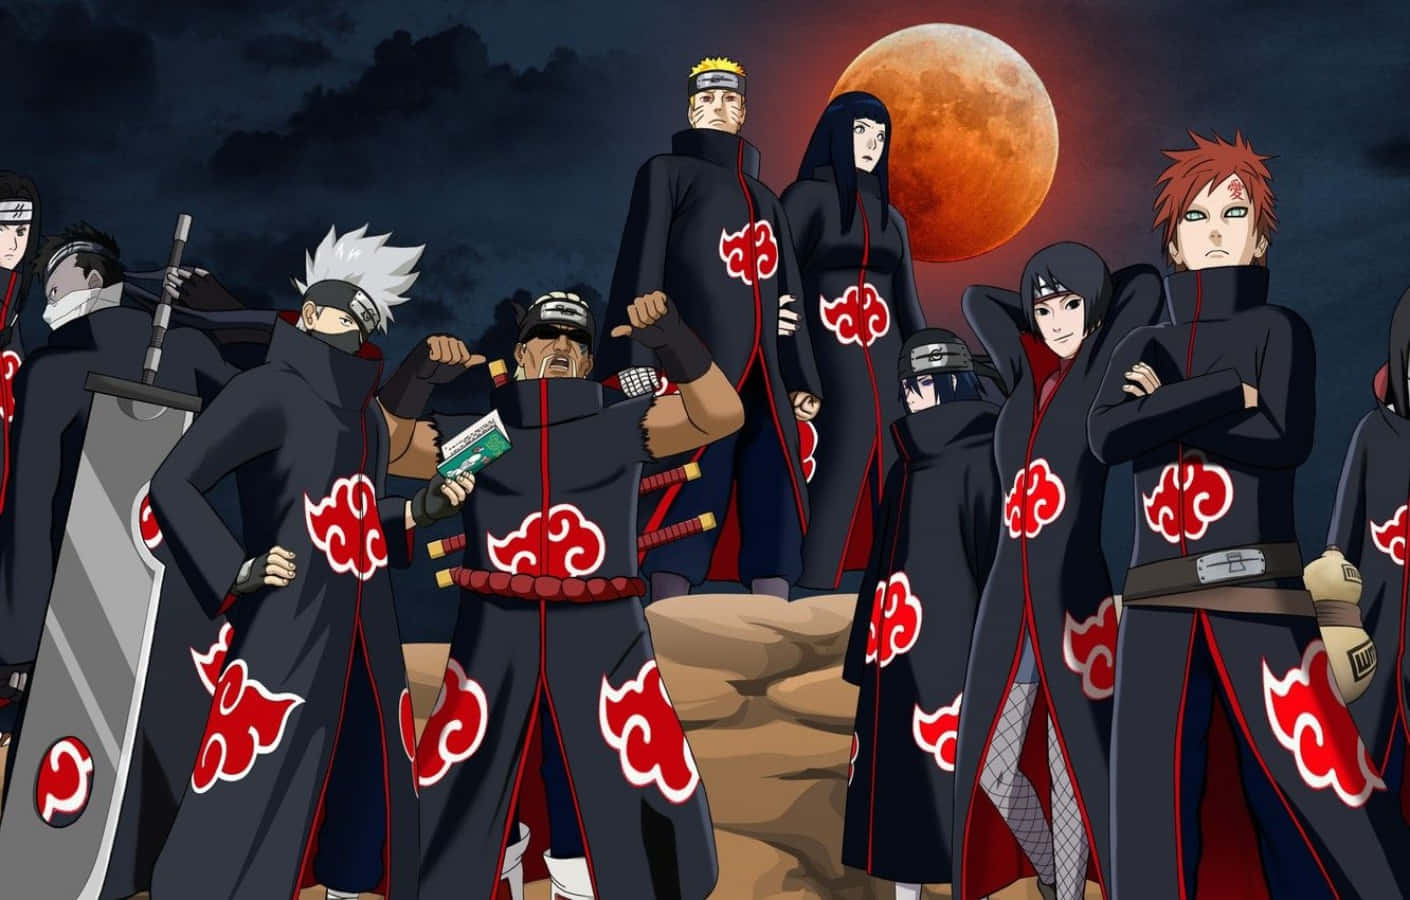 Mærk kraften af ninjaen i det klassiske PS4 spil, Naruto. Wallpaper